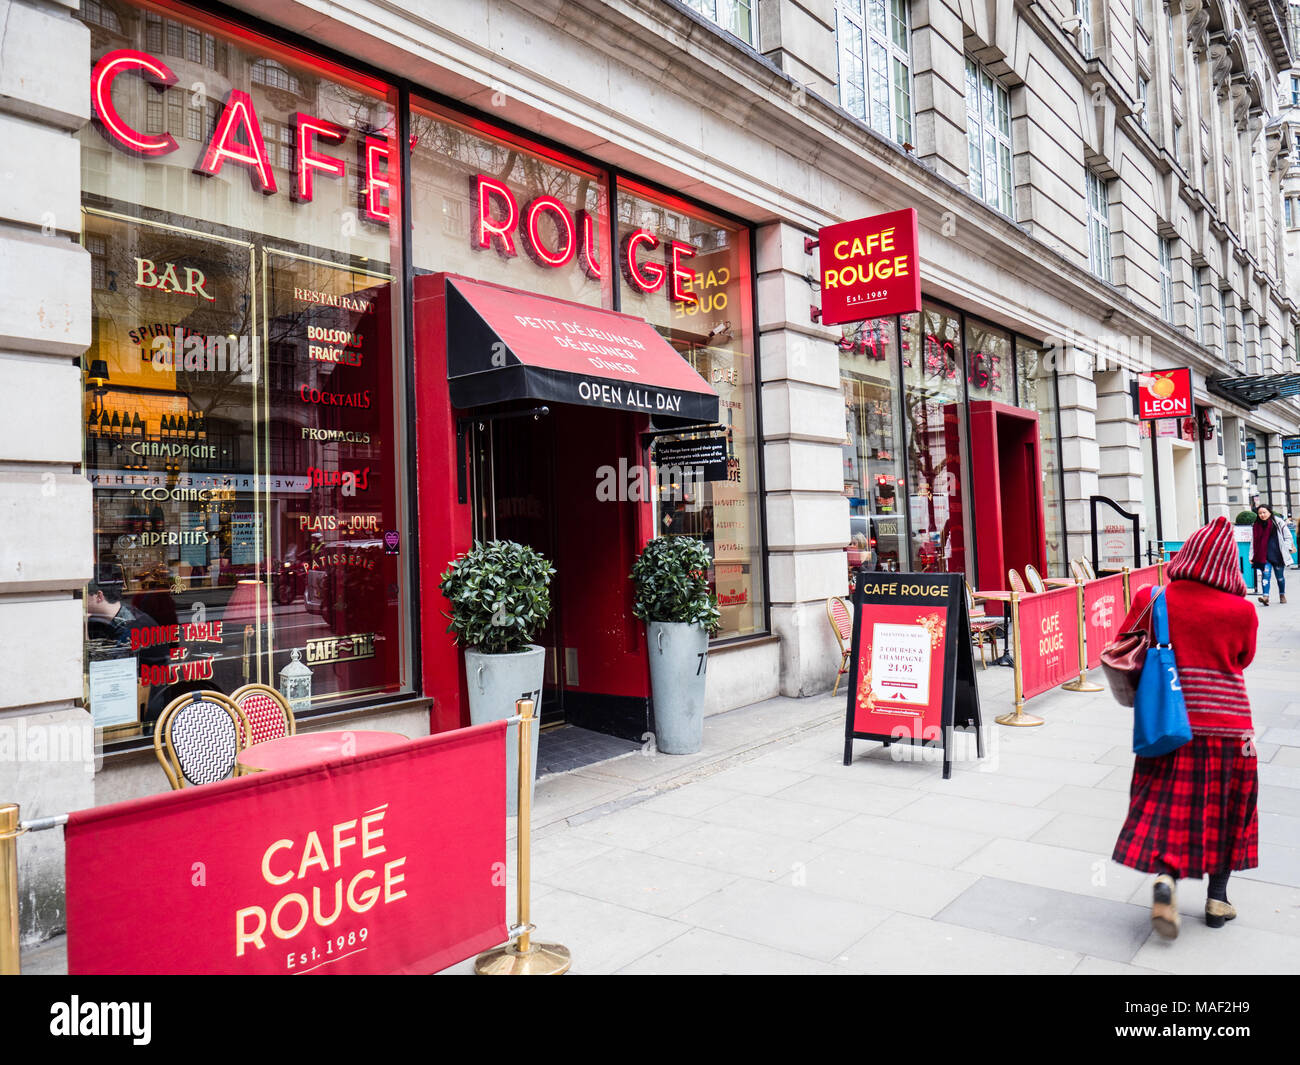 Cafe Rouge ristorante di Londra - un ramo del Cafe Rouge stile bistro francese ristorante della catena sulla Kingsway nel centro di Londra Foto Stock